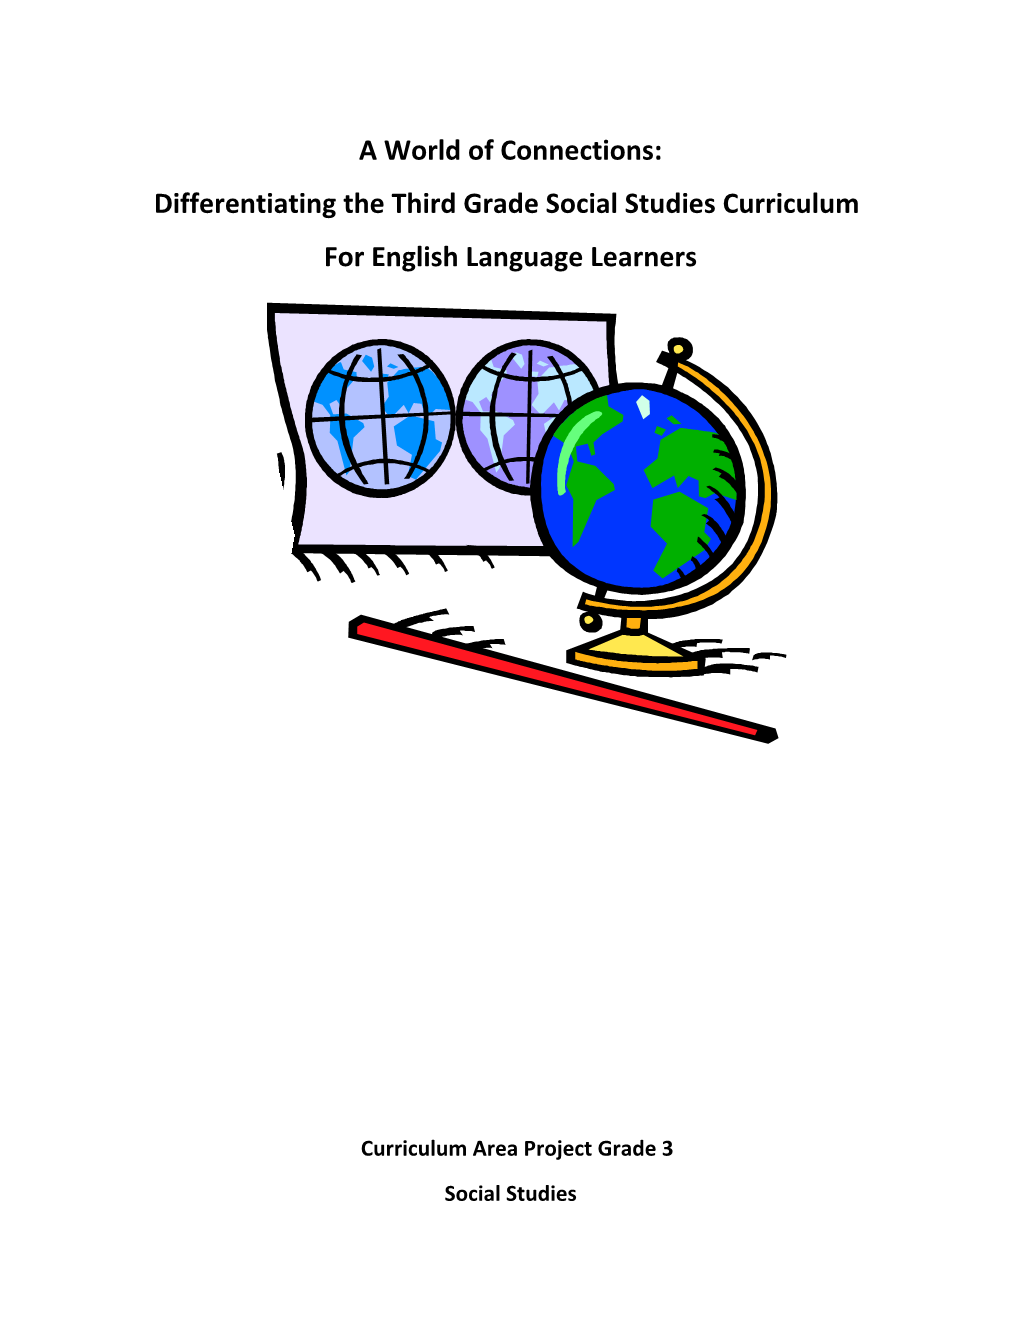 Differentiating the Third Grade Social Studies Curriculum